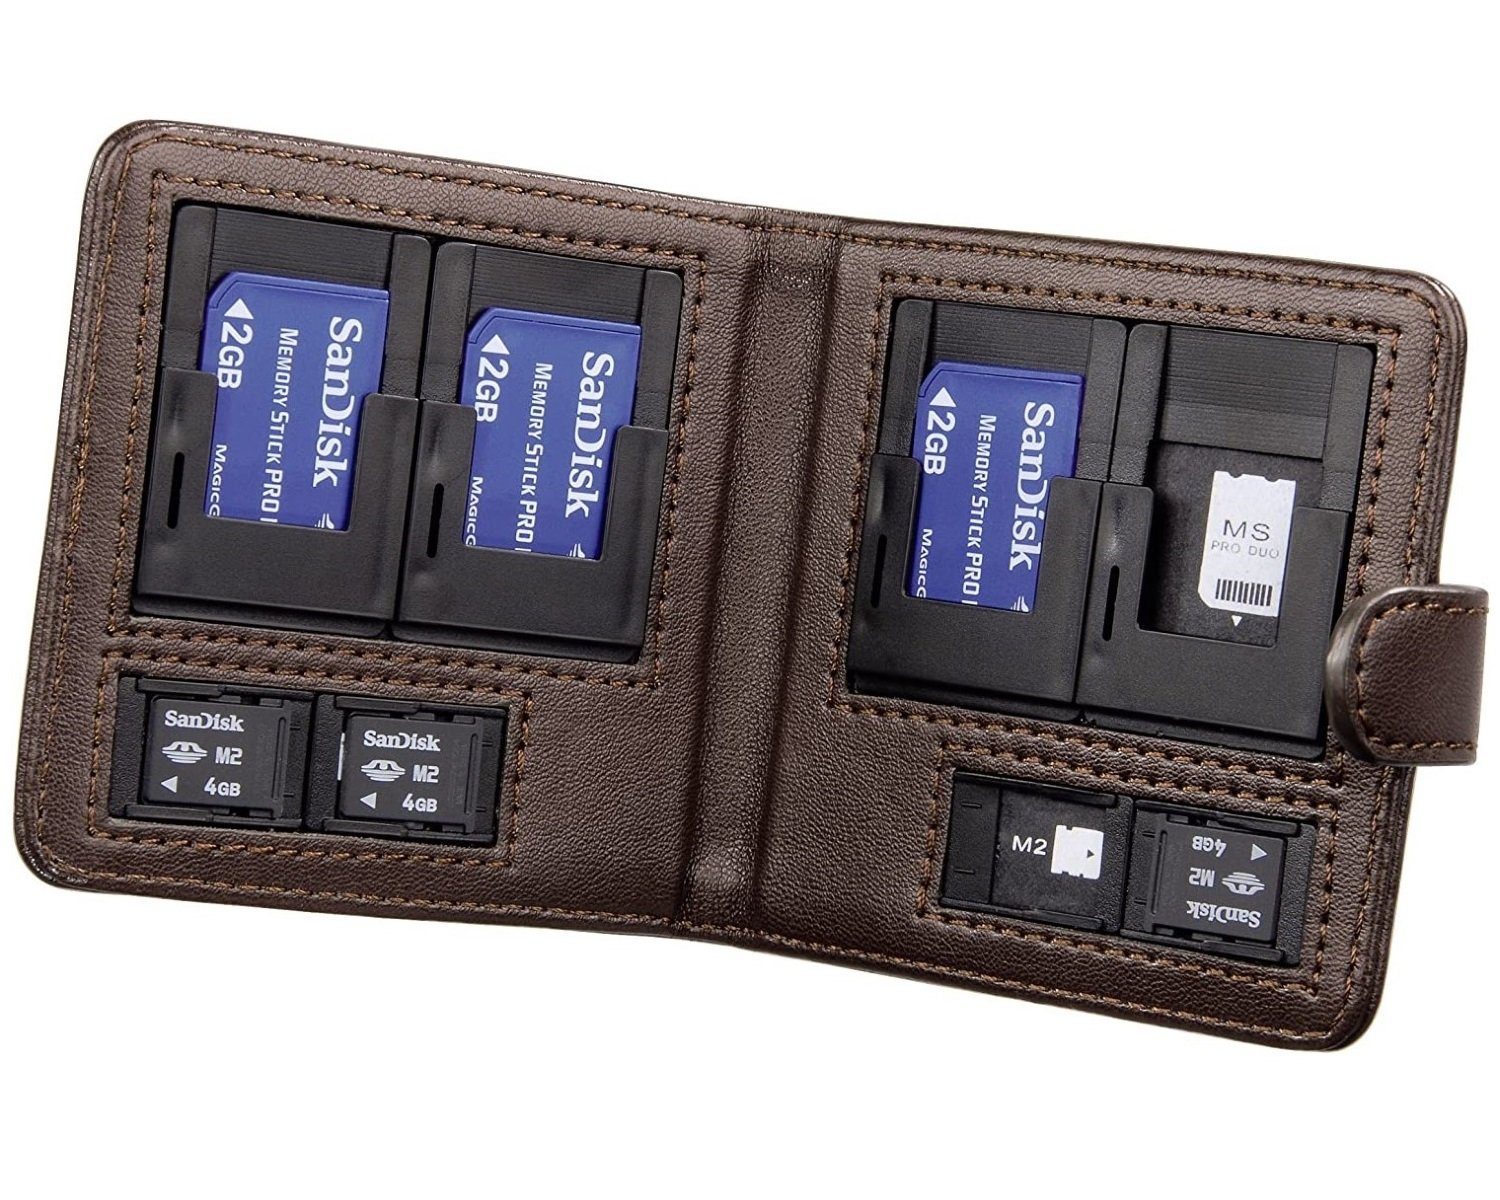 für Etui für MemoryStick-Pro Memory-Stick Schutz-Hülle Speicherkarten-Tasche 8x Micro-M2 Memory-Card Sony Braun, Hama MemoryStick